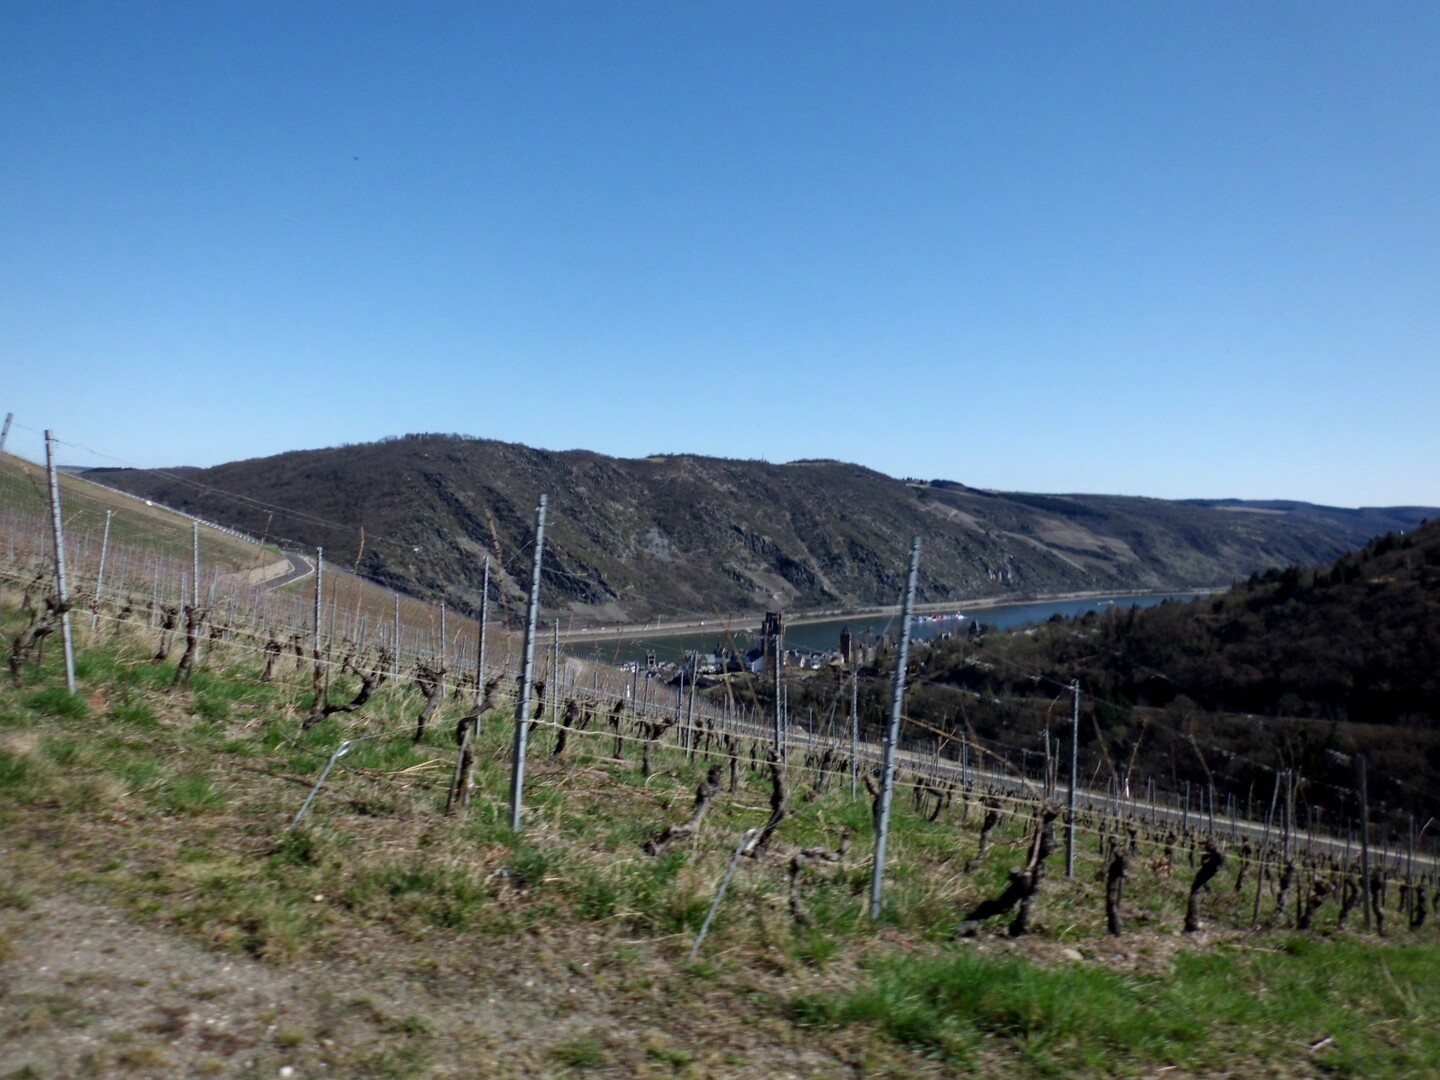 und noch ein Blick über die Weinberge hinweg ins Mittelrheintal mit dem romantischen Städtchen Oberwesel